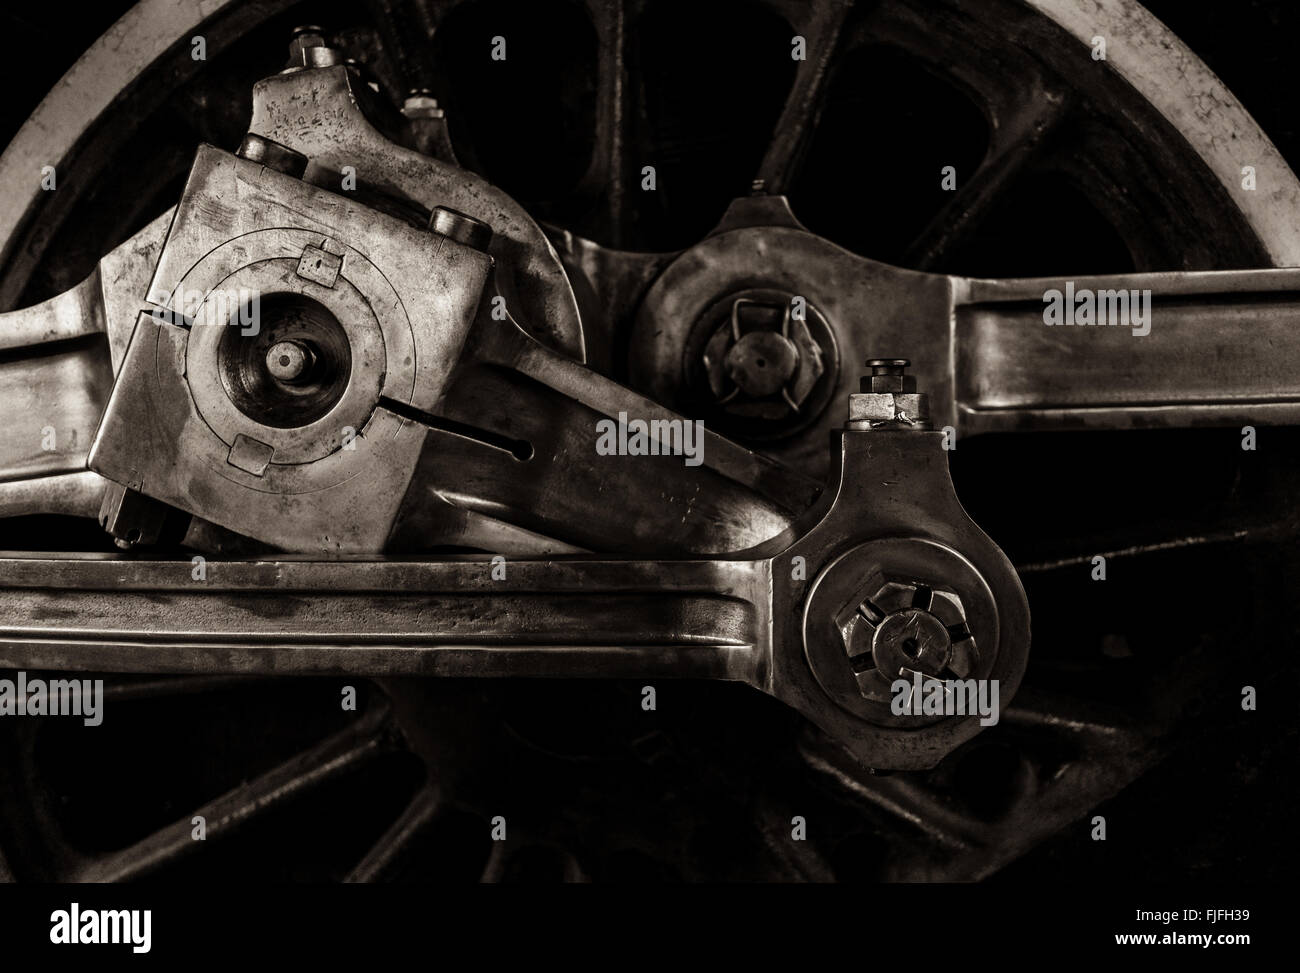 Imágenes horizontales horizontal muestra el detalle de una vendimia locomotoras rueda de transmisión y los engranajes del museo de ciencia y tecnología de Ottawa Foto de stock